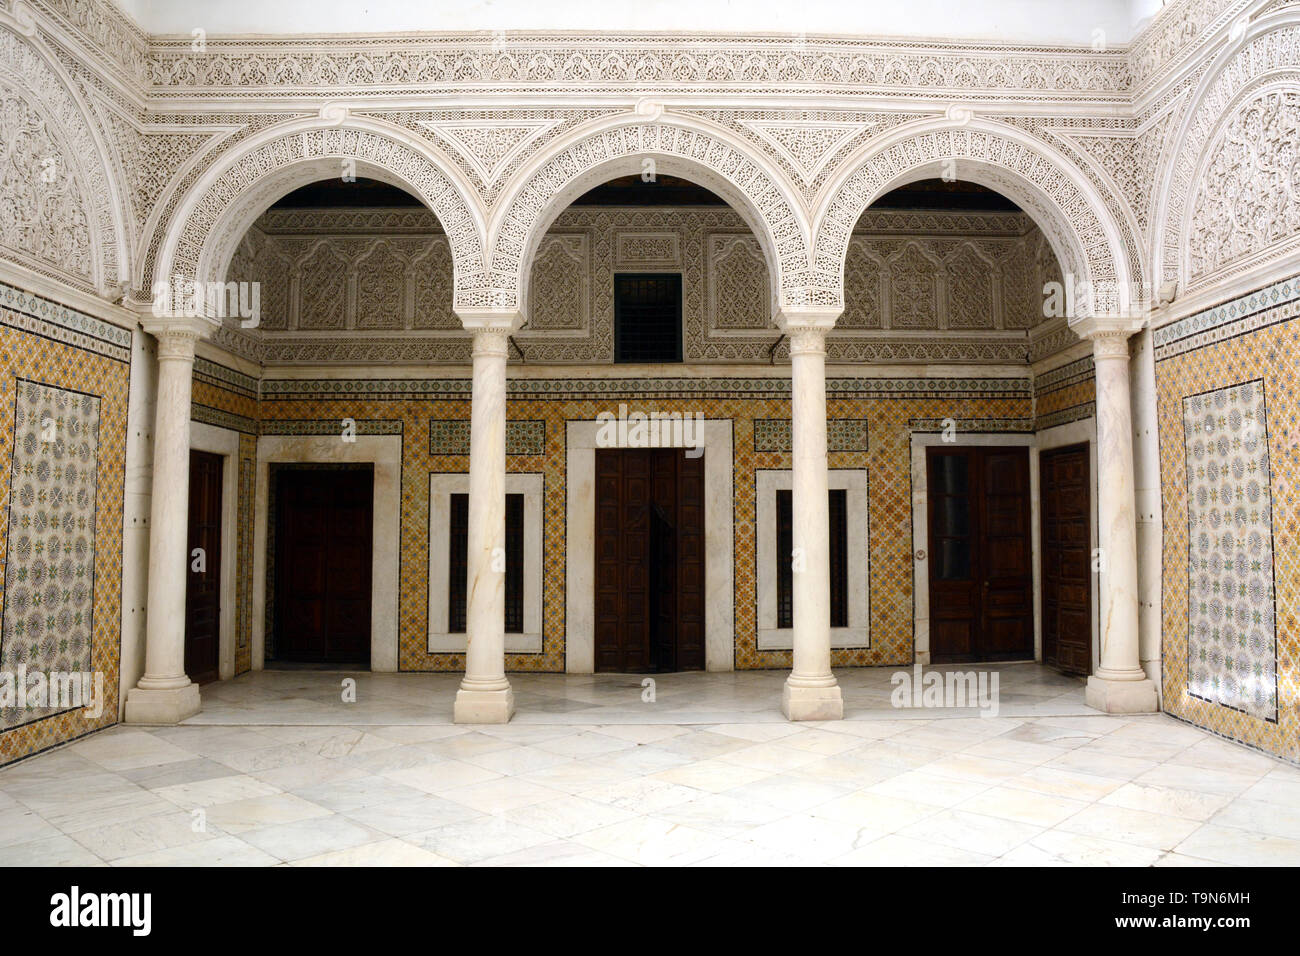 Islamische architektonische Motive und Fliesen im zentralen Innenhof eines traditionellen Haus aus dem 17. Jahrhundert in der Medina (Altstadt) von Tunis, Tunesien. Stockfoto